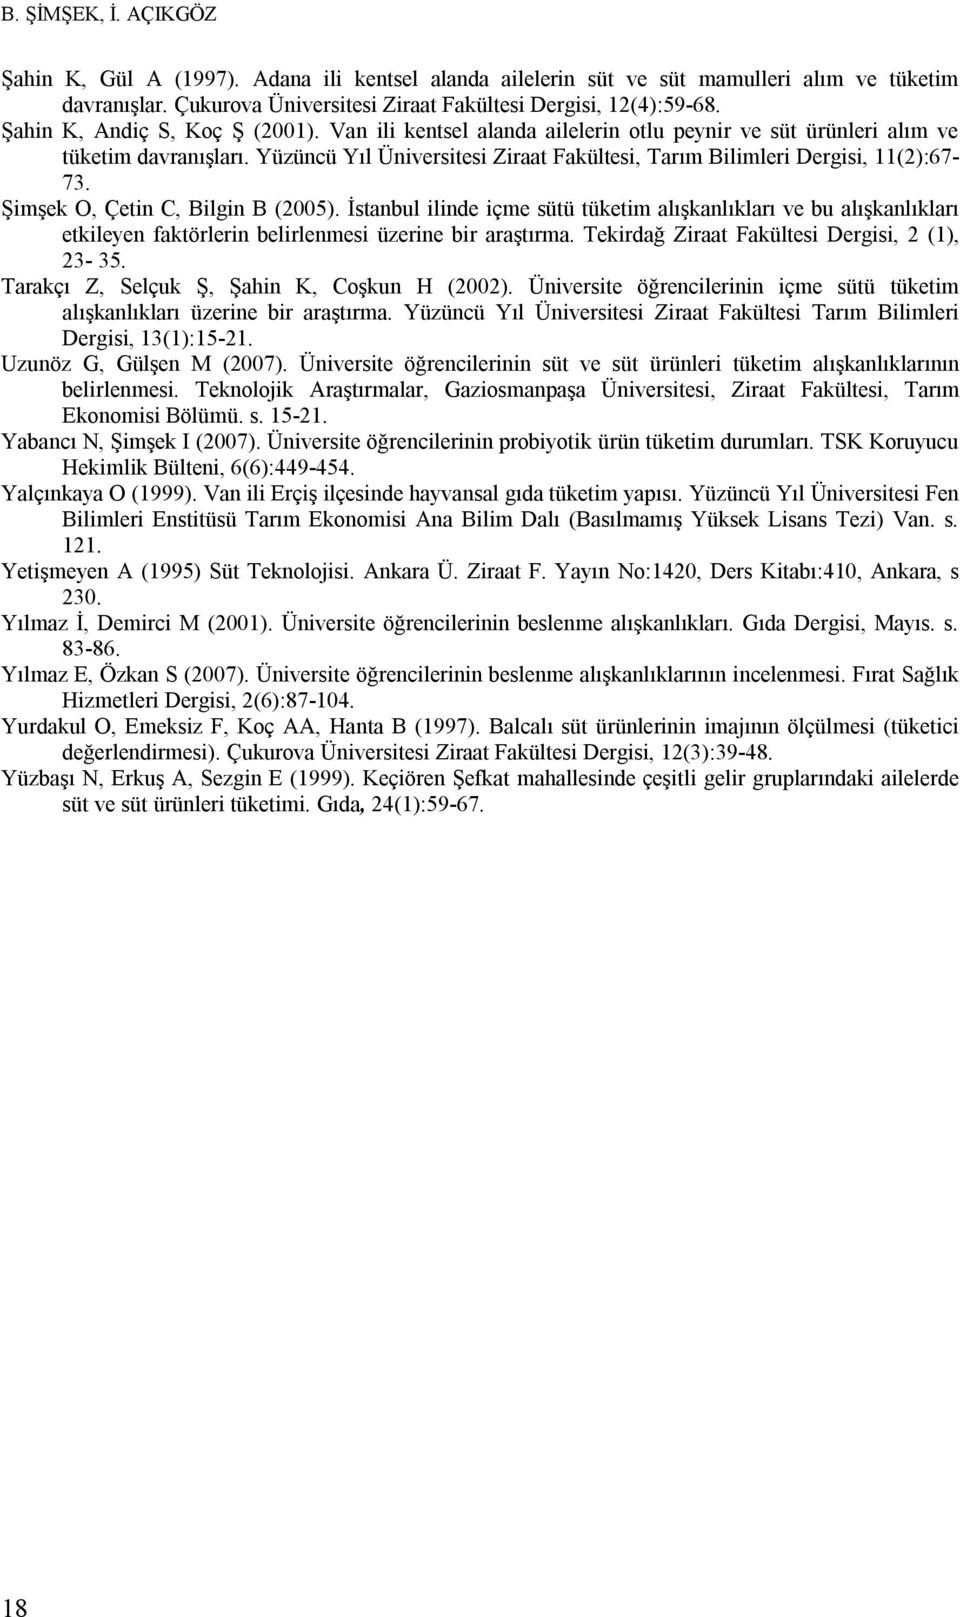 Yüzüncü Yıl Üniversitesi Ziraat Fakültesi, Tarım Bilimleri Dergisi, 11():67-73. Şimşek O, Çetin C, Bilgin B (005).